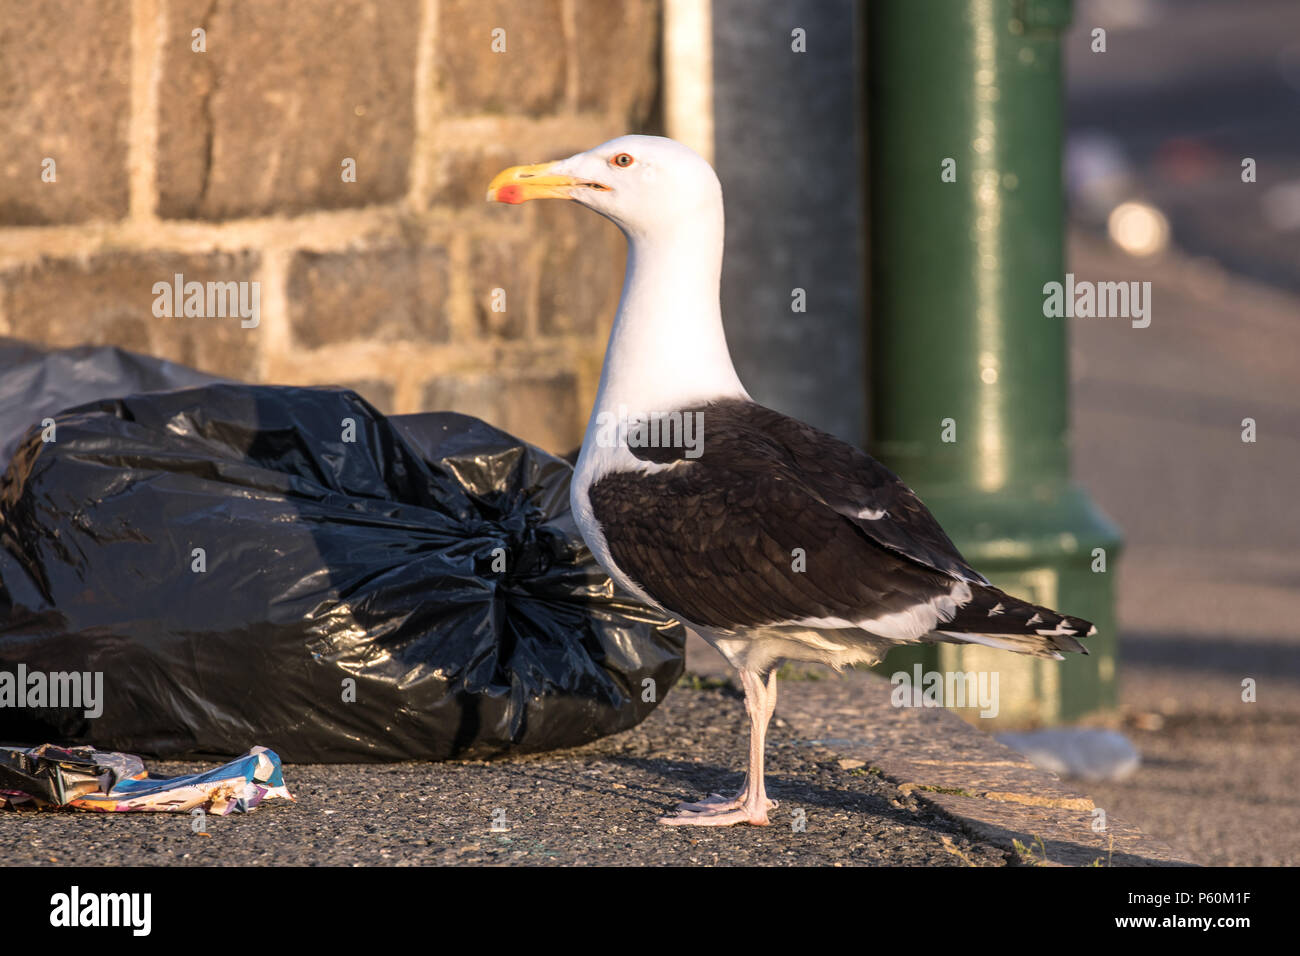 Gabbiani ad aiutare se stessi a rifiuti sinistra da Golowan i frequentatori del festival in Penzance. Gli uccelli sono stati lo strappo bin borse e trascinando per lettiera ovunque. Foto Stock